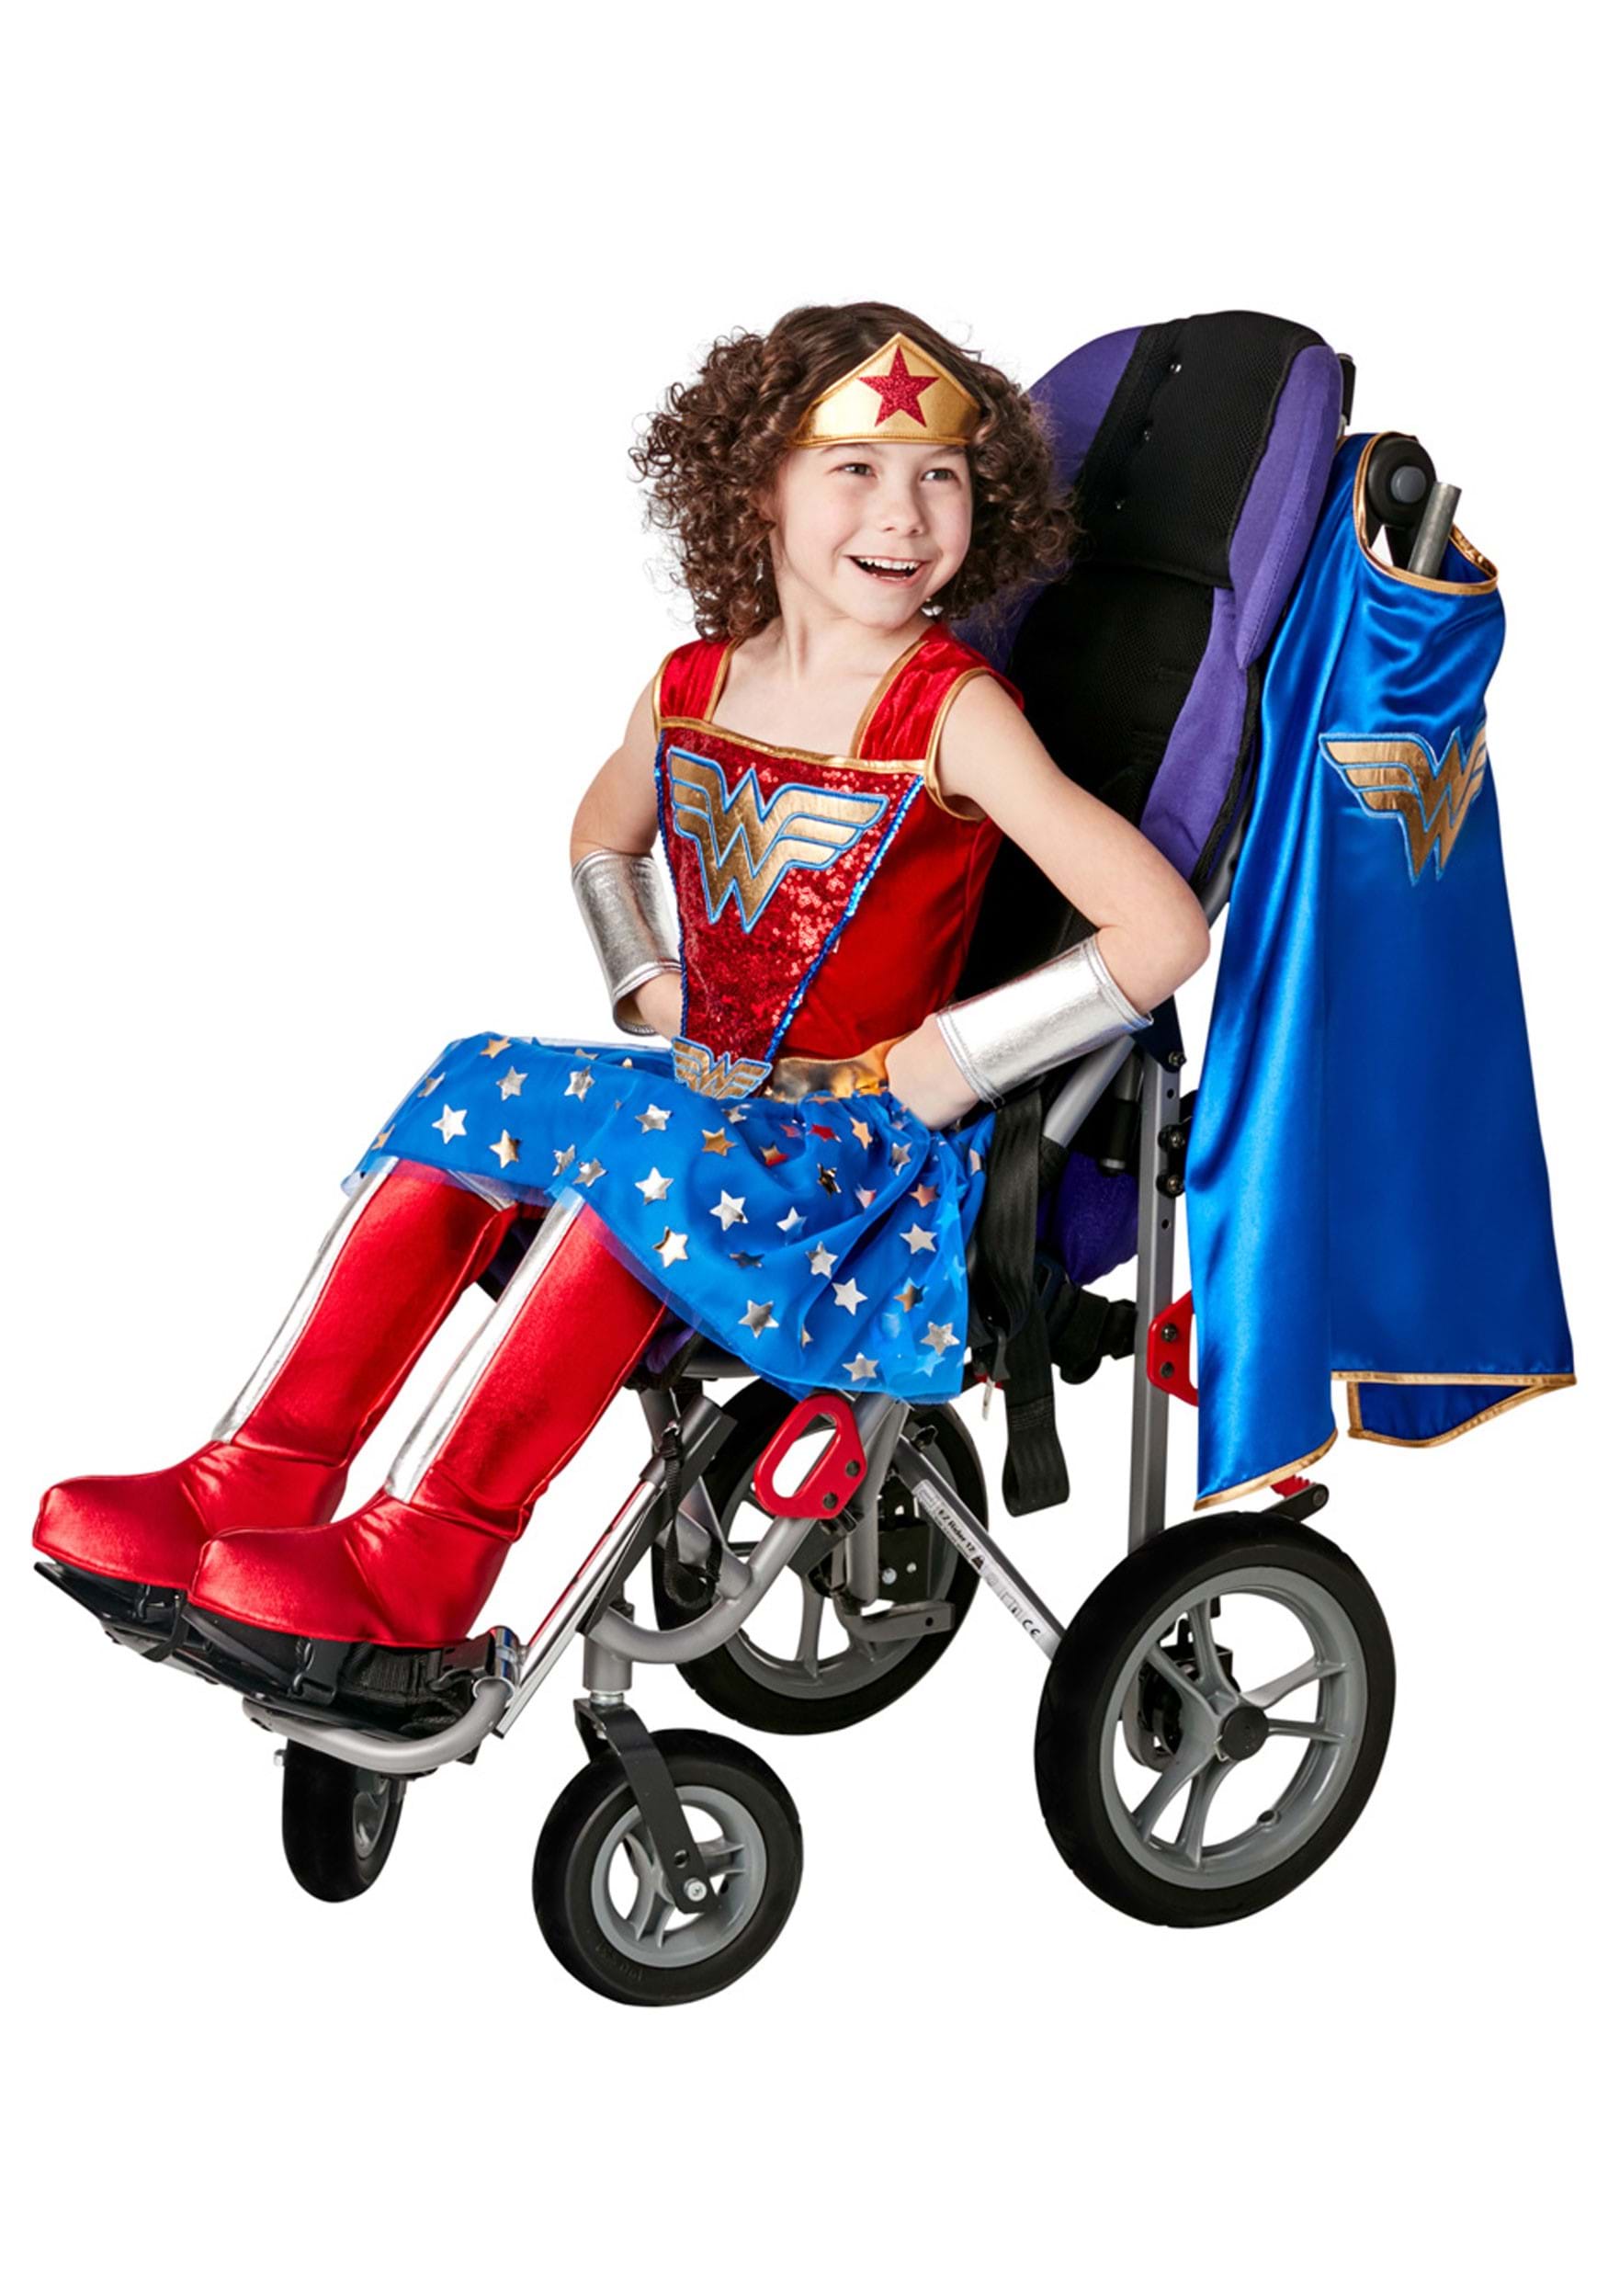 Adaptive Wonder Woman Fancy Dress Costume For Kids , Wonder Women